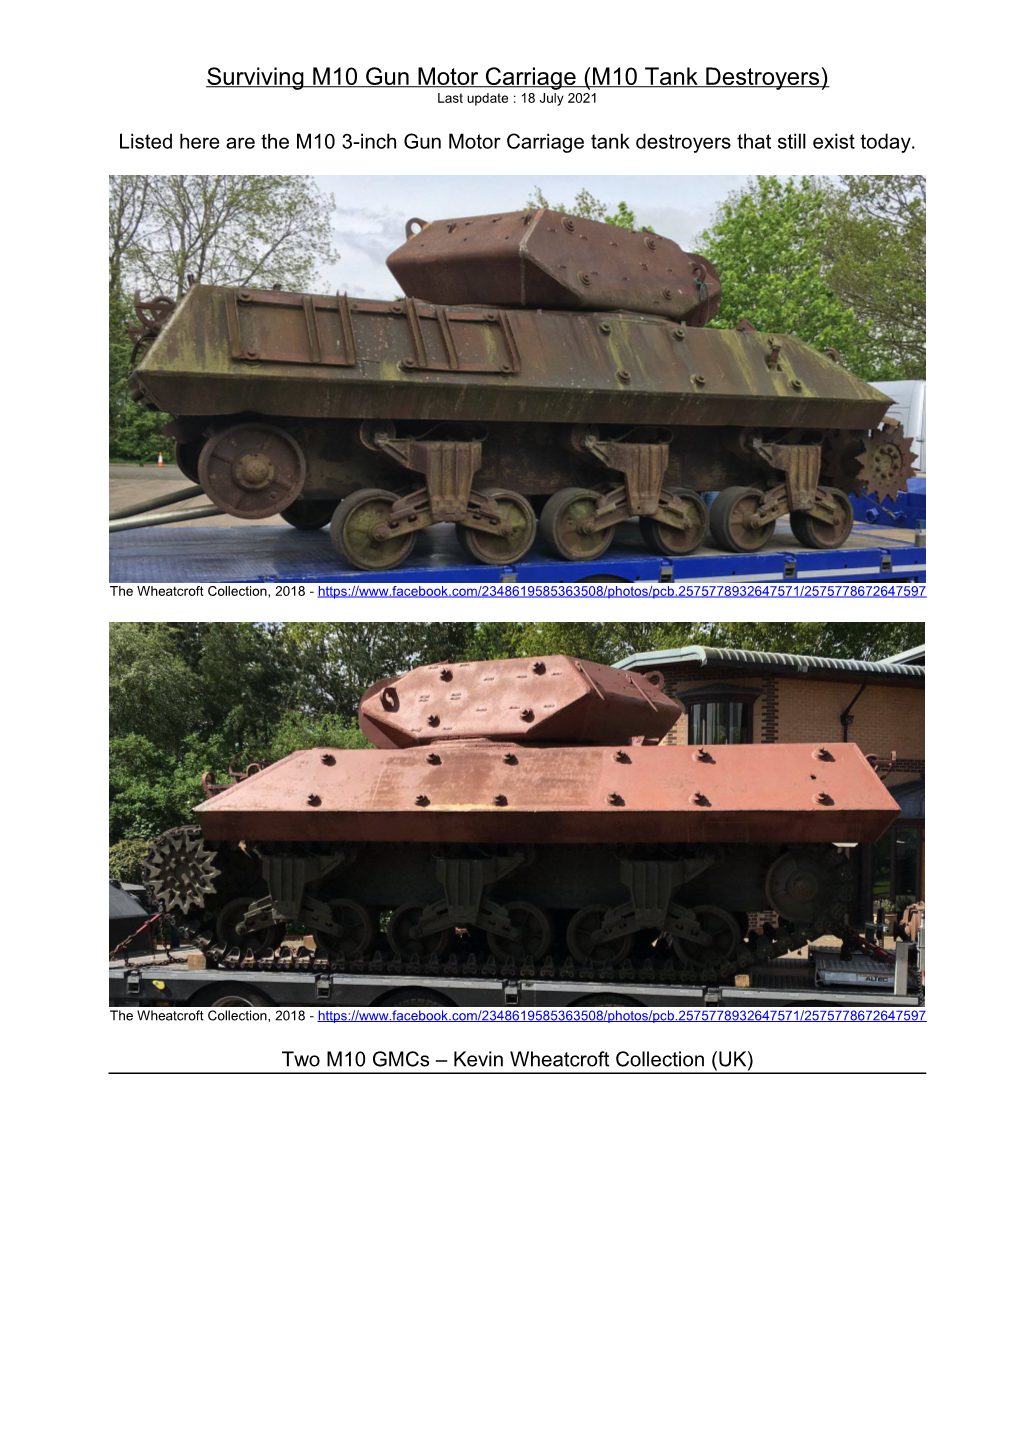 M10 Tank Destroyers) Last Update : 18 July 2021